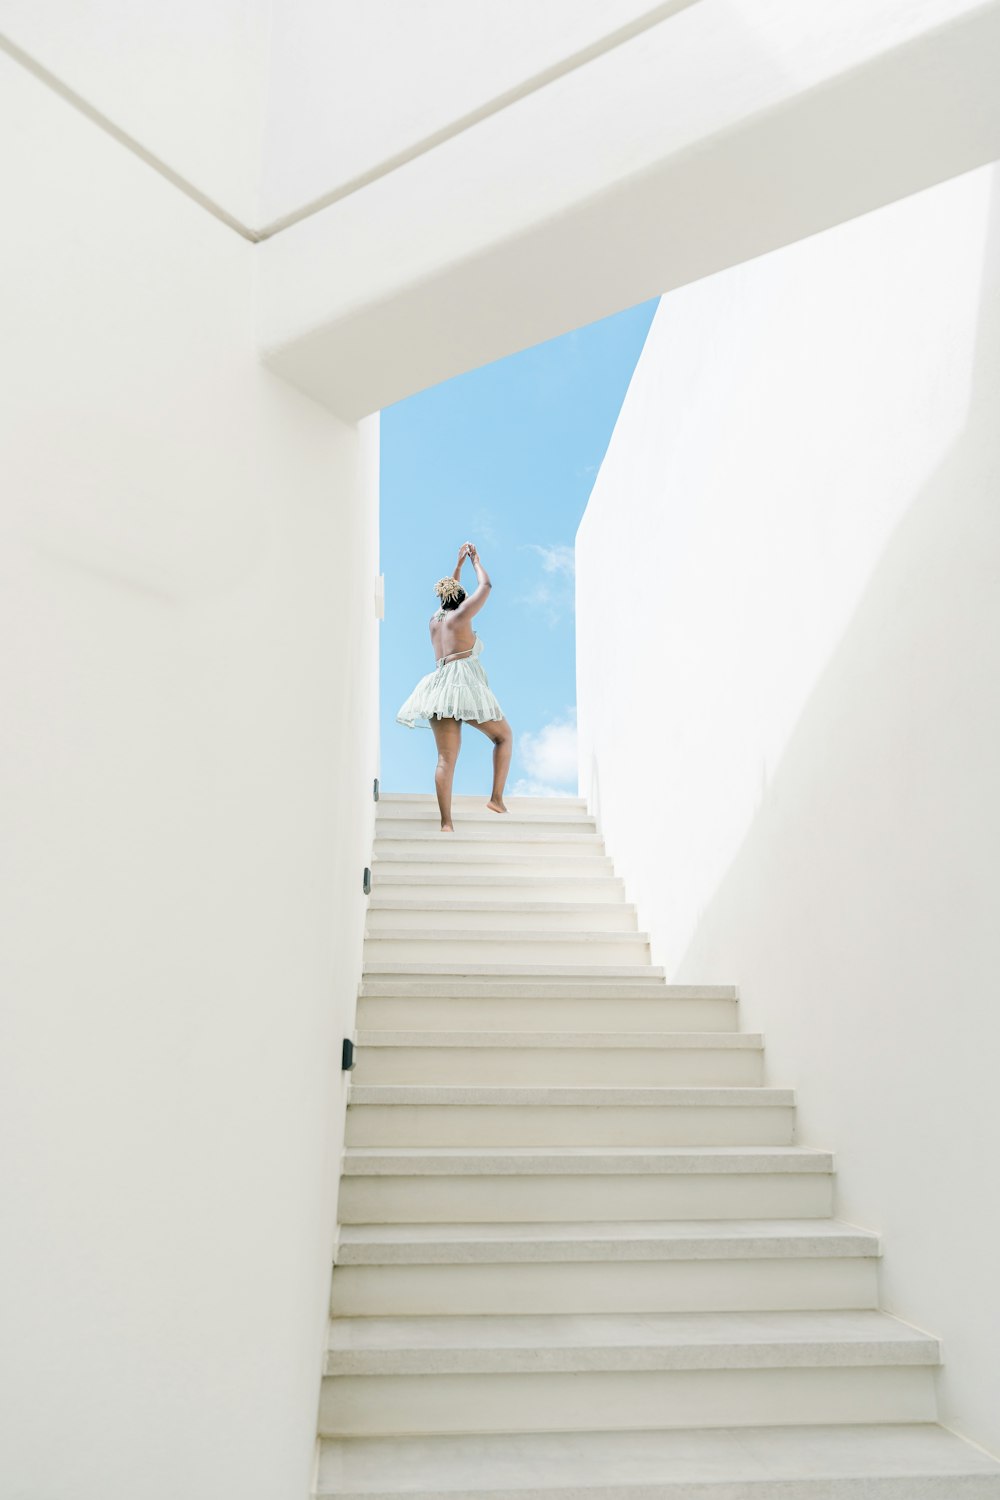 Una mujer con un vestido blanco está bajando unas escaleras